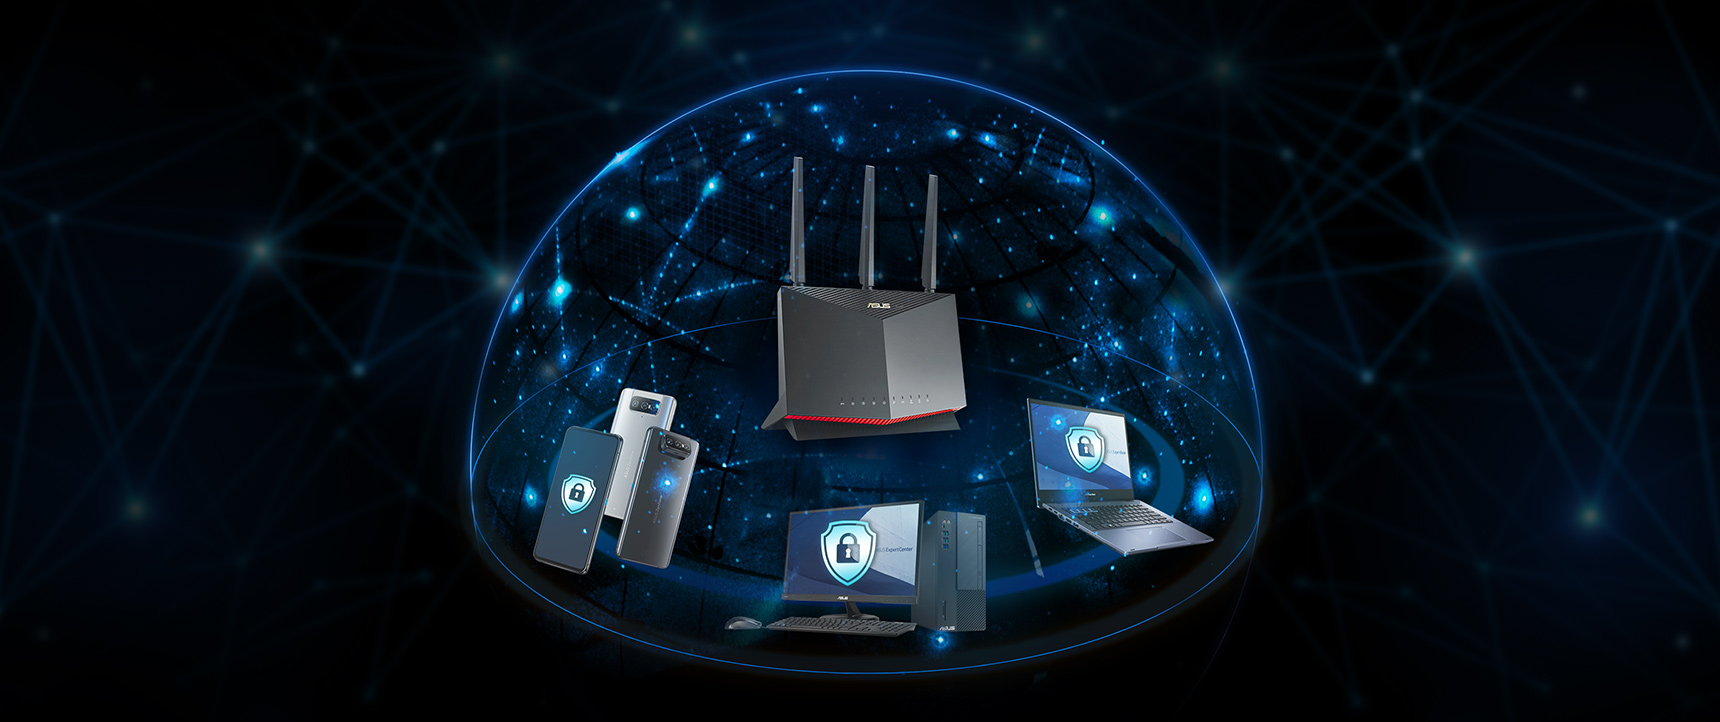 Väčšina routerov ASUS obsahuje technológiu AiProtection od spoločnosti Trend Micro™, ktorá zabezpečuje ochranu každého zariadenia vo vašej podnikovej sieti.